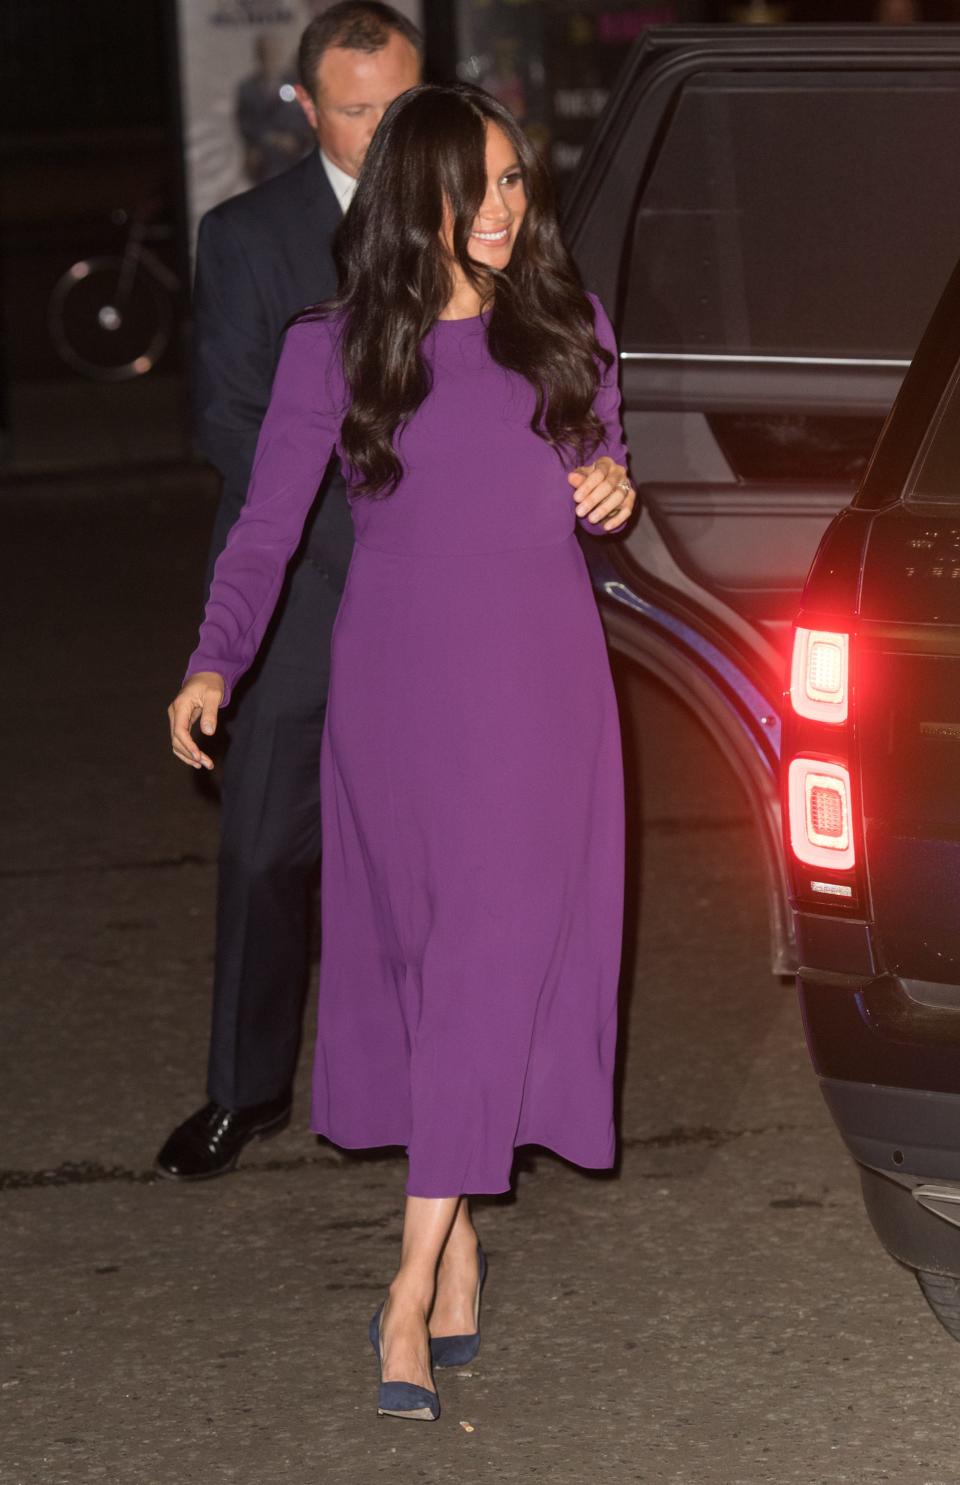 Meghan Markle wearing a purple dress.